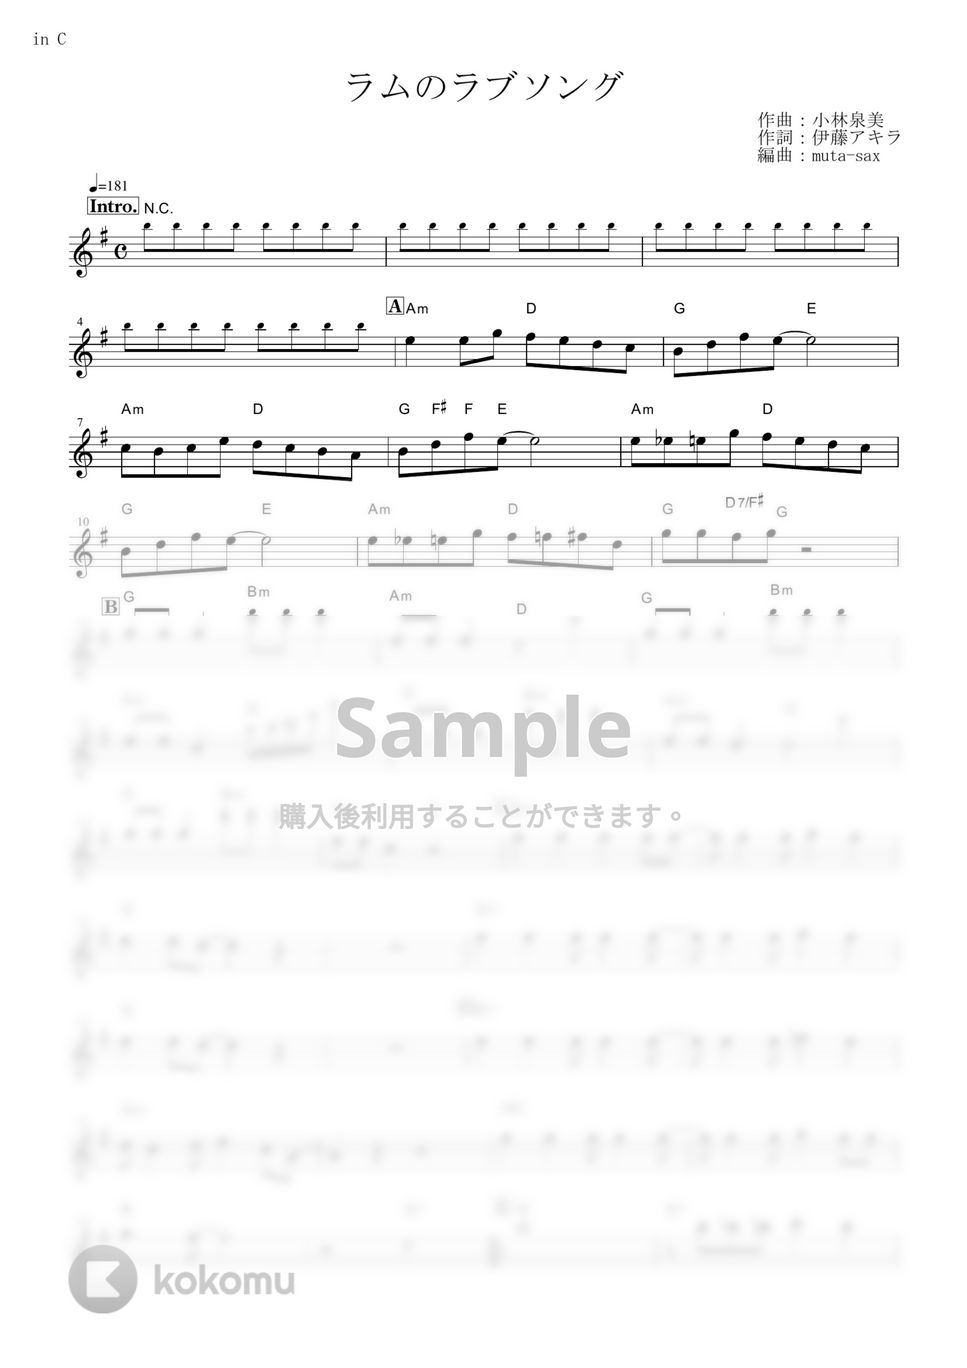 松谷祐子 - ラムのラブソング (『うる星やつら』 / in C) by muta-sax